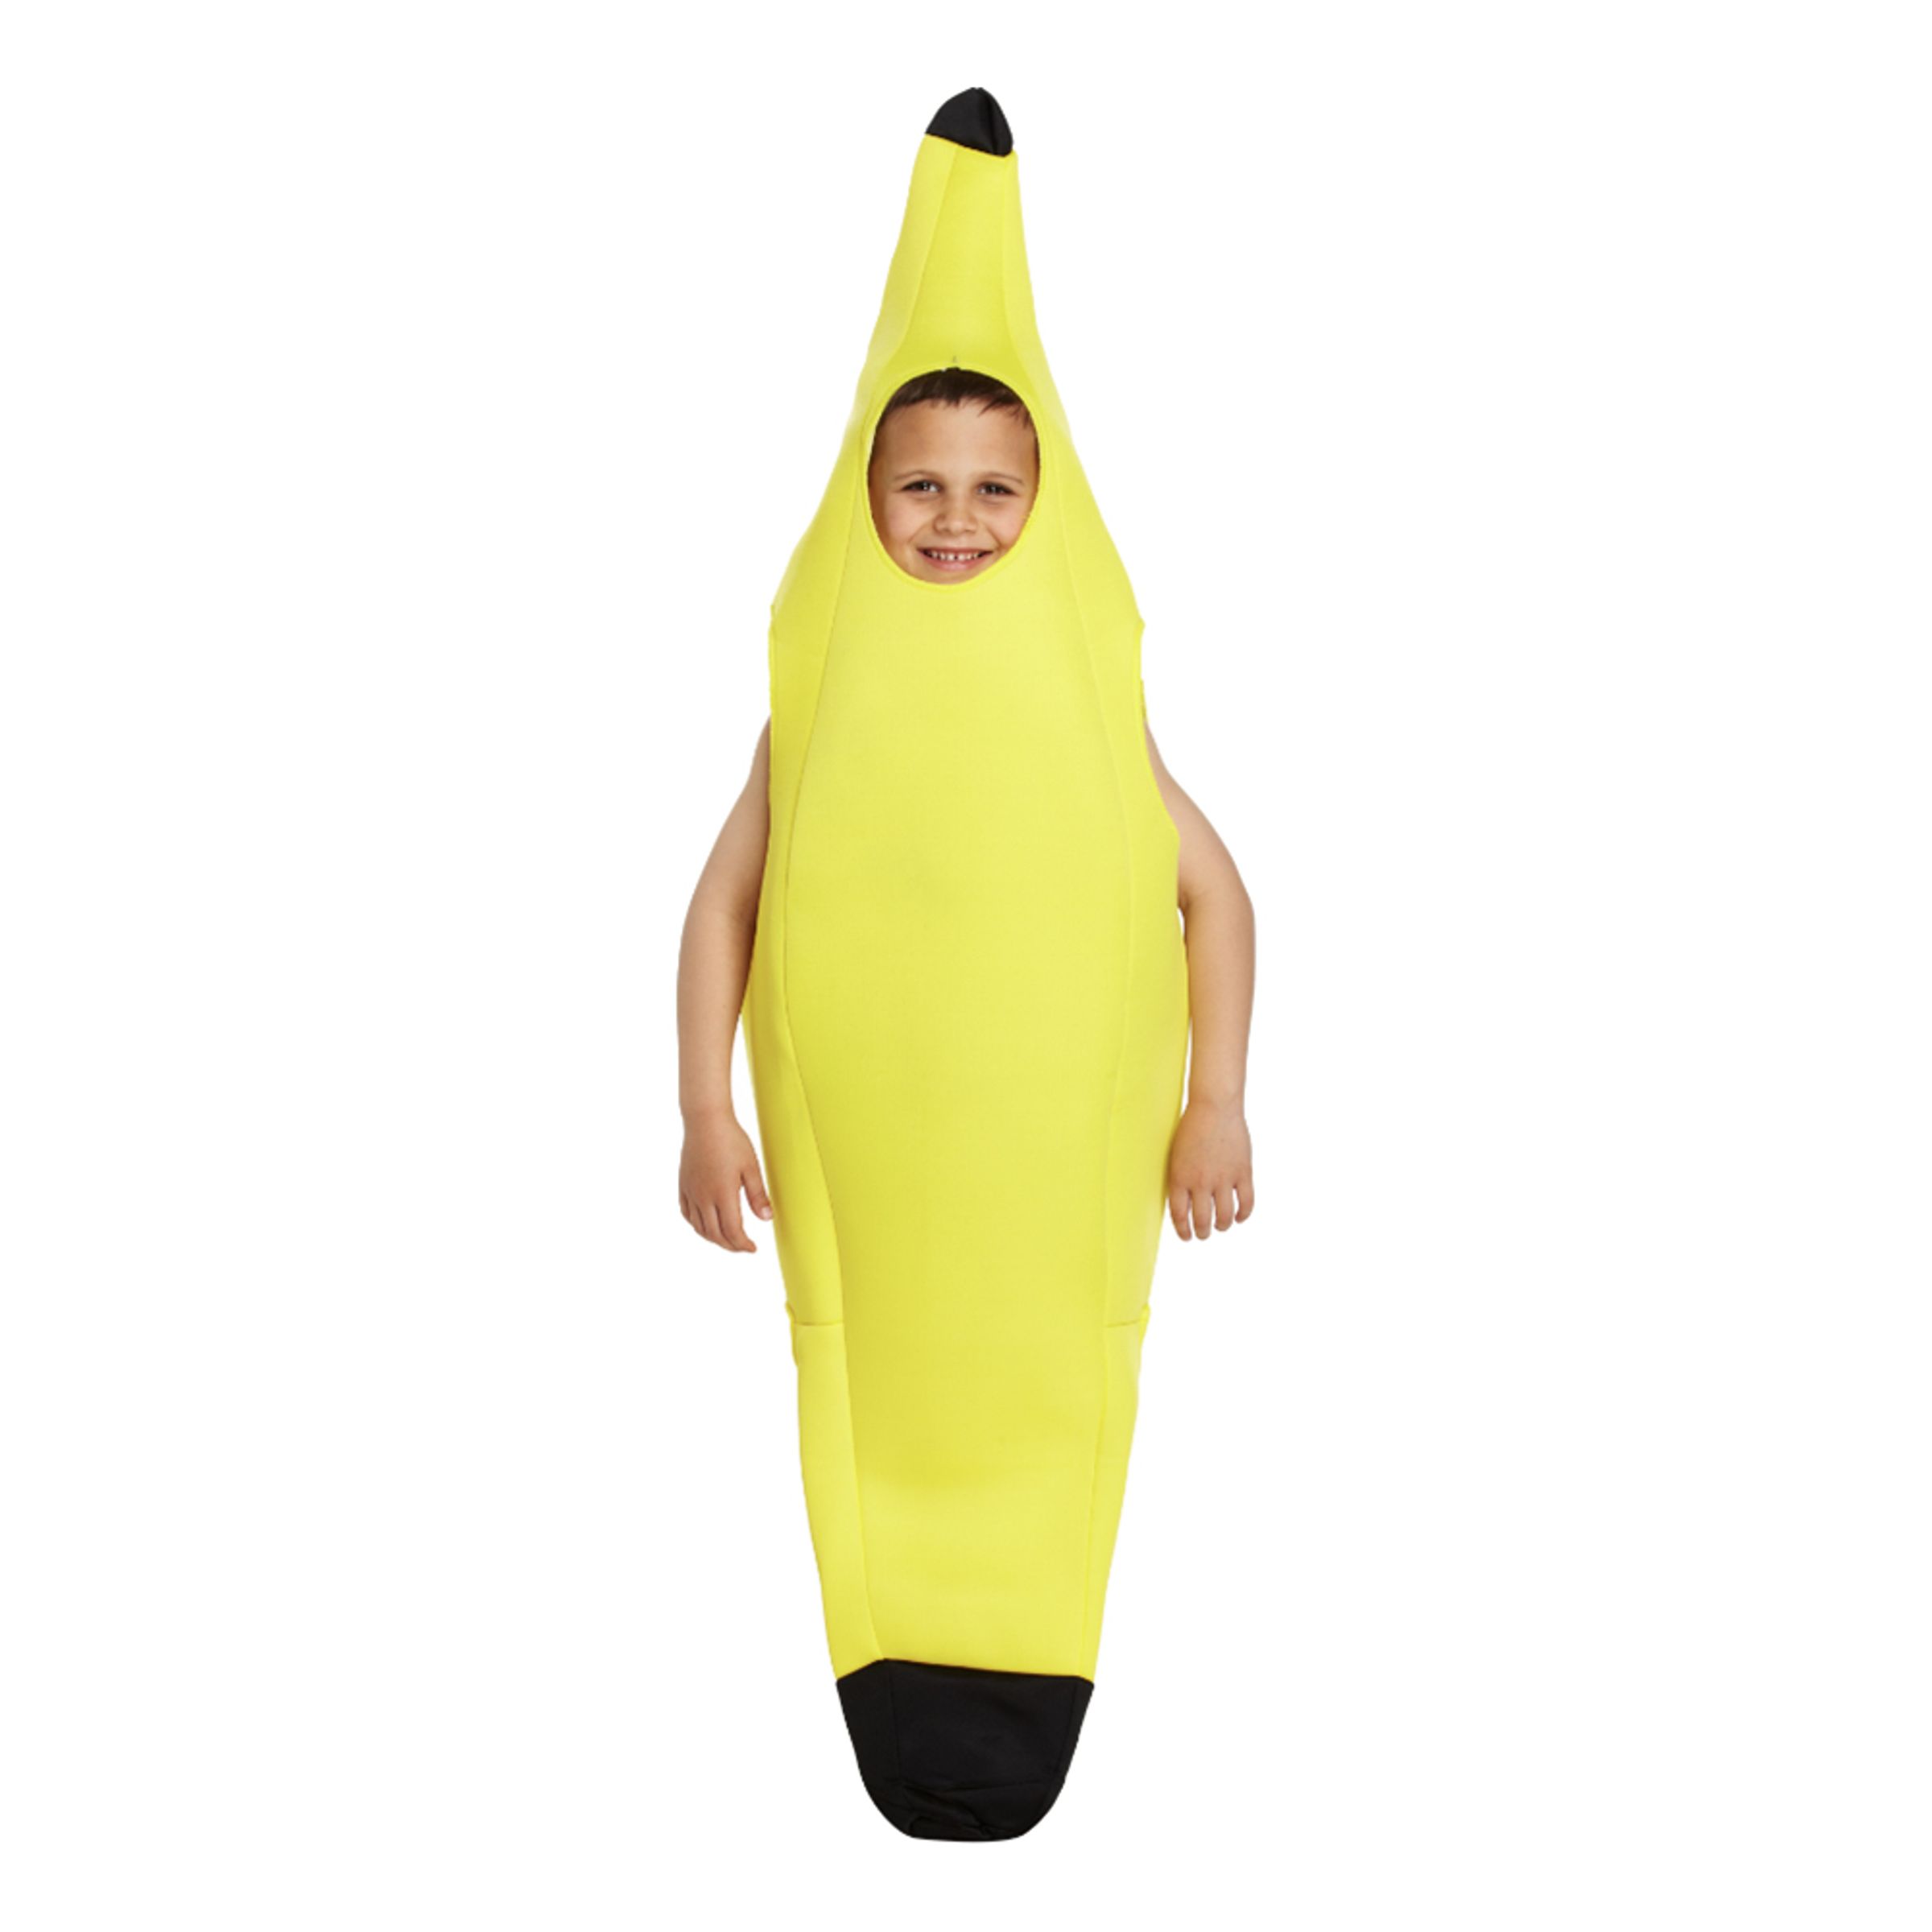 Banan Barn Maskeraddräkt - Large